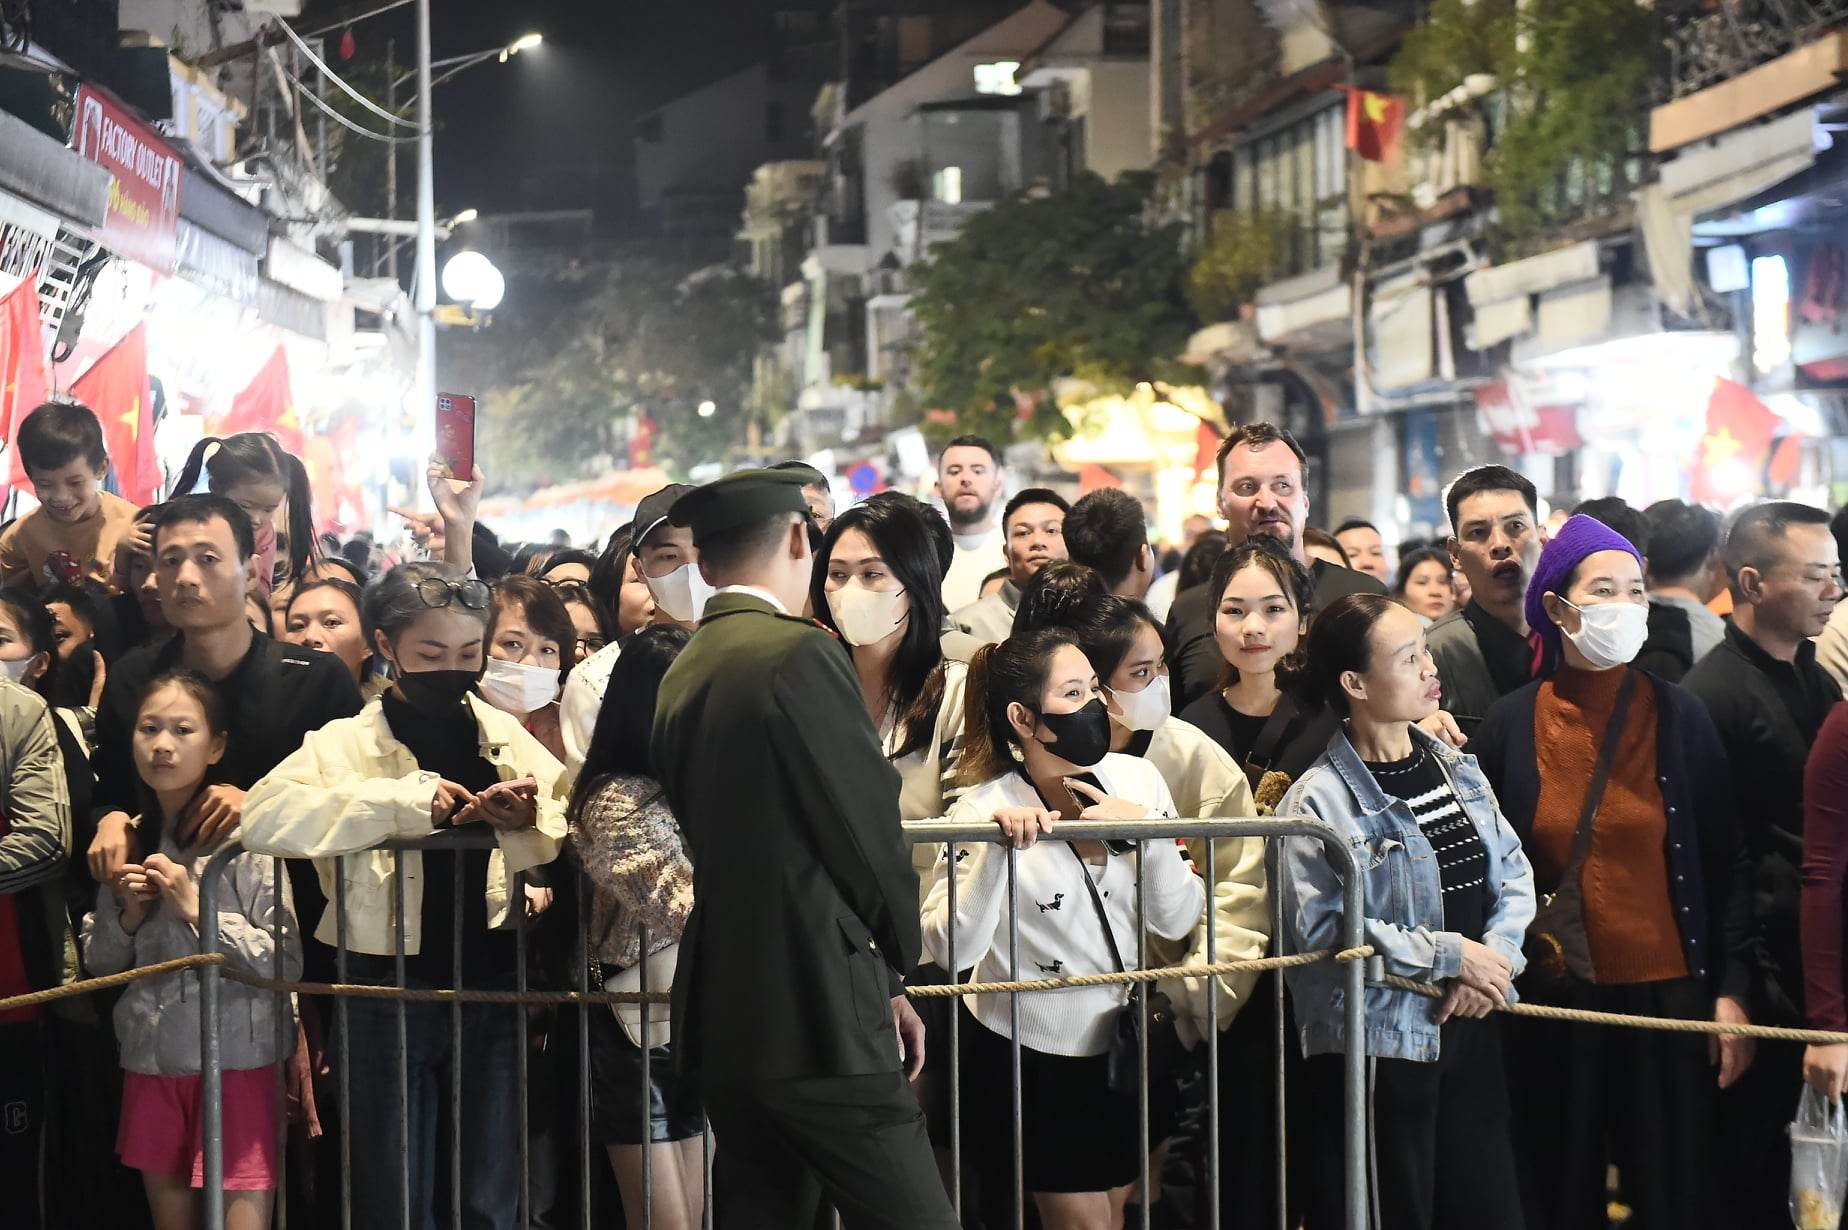 Hình ảnh nhìn đã thấy ngộp thở: Hàng nghìn người nhích từng chút ở phố đi bộ Hà Nội chờ giao thừa- Ảnh 6.